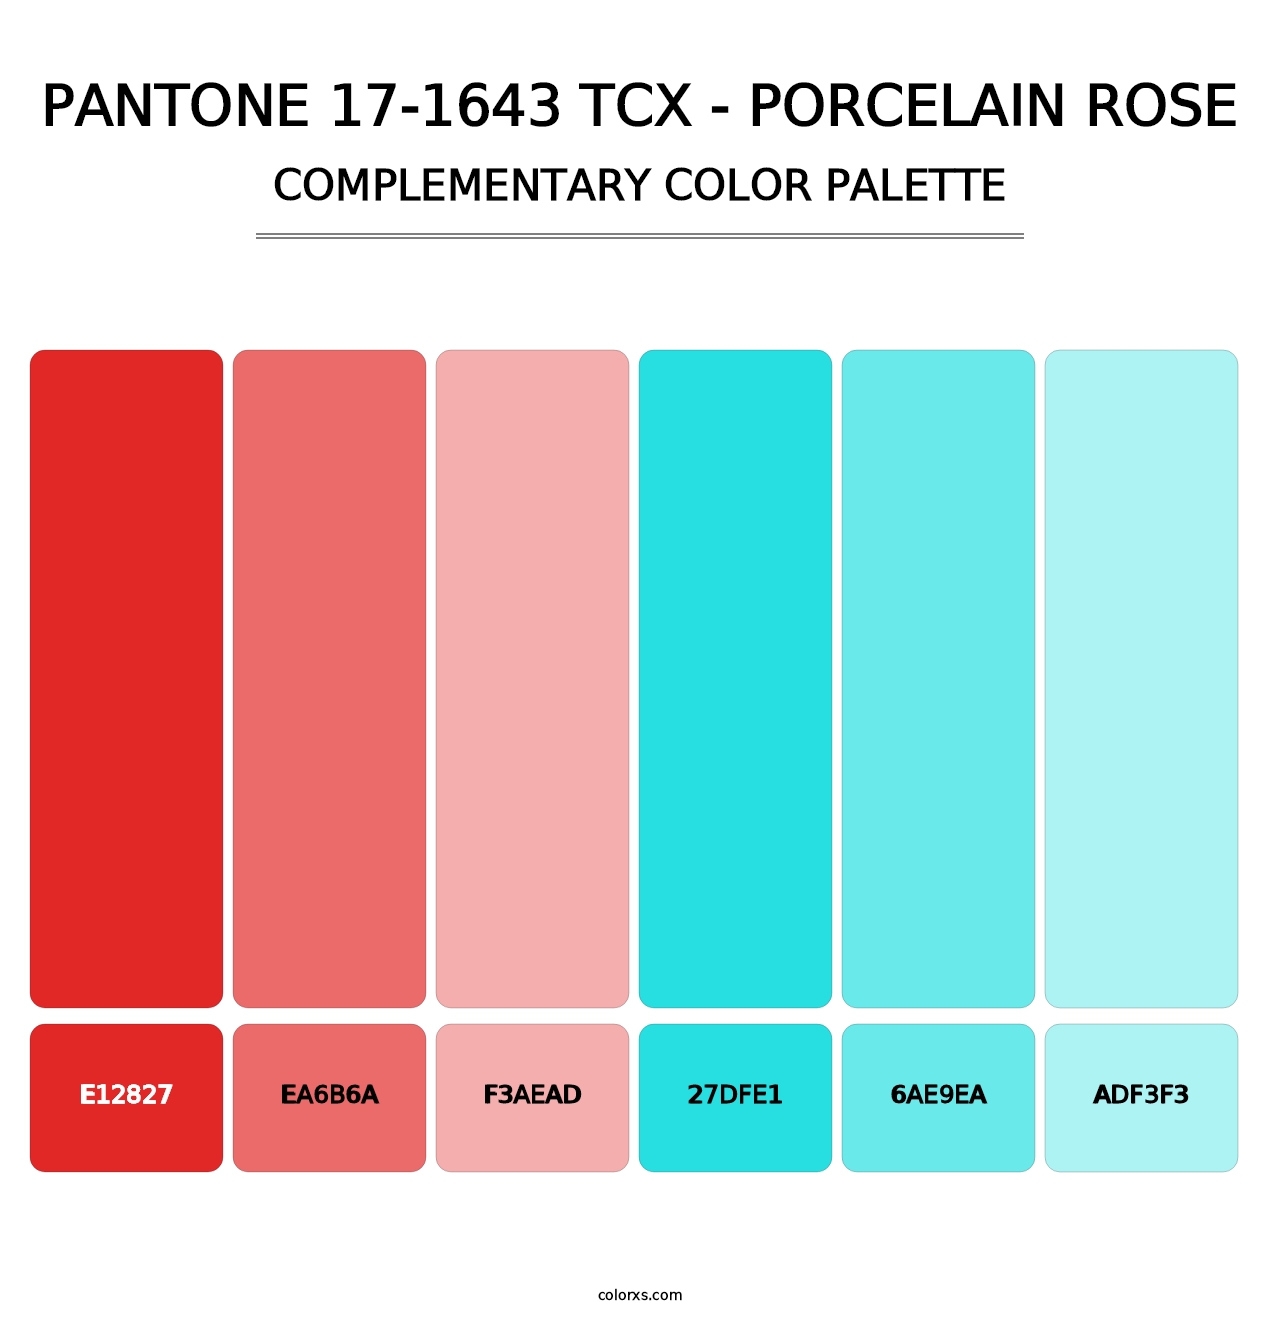 PANTONE 17-1643 TCX - Porcelain Rose - Complementary Color Palette